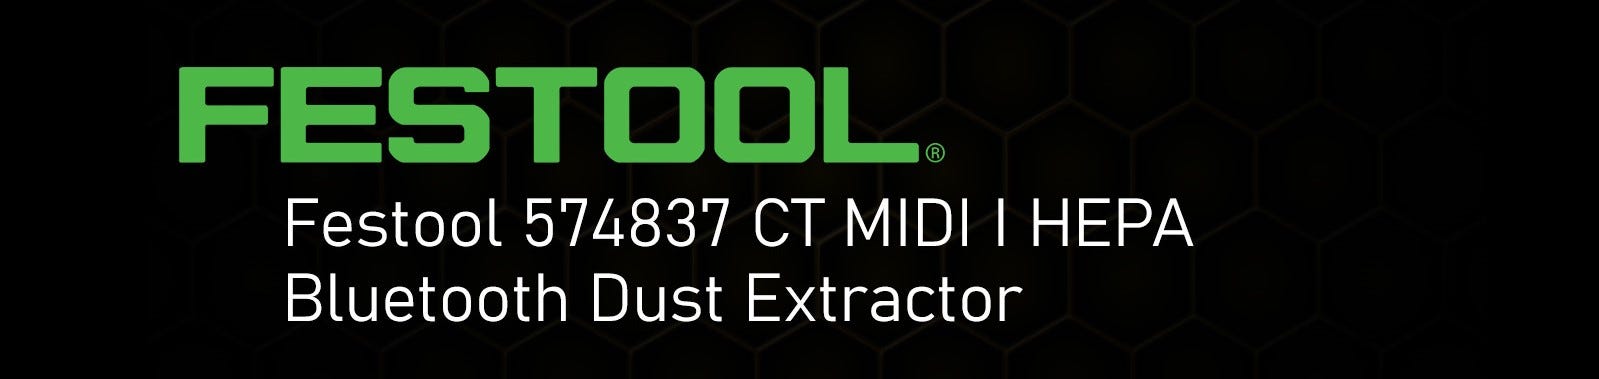 Festool 574837 Ct Midi I Hepa Bluetooth Dust Extractor - 3